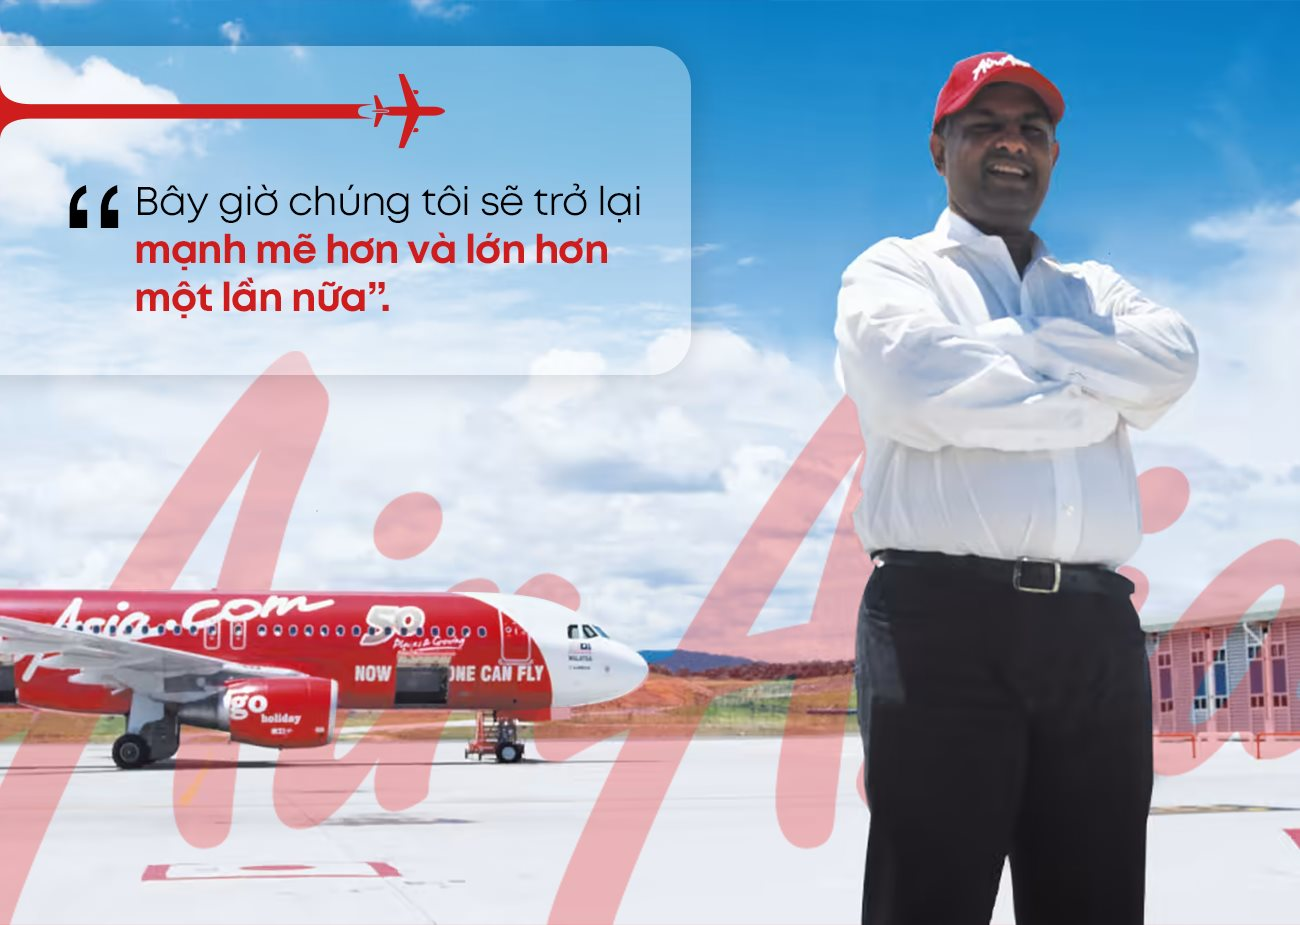 CEO Airasia: ‘Cắm’ nhà lập hãng hàng không, đối mặt với trải nghiệm ‘suýt chết’ và lời khẳng định ‘chúng tôi sẽ mạnh mẽ hơn’ - Ảnh 11.